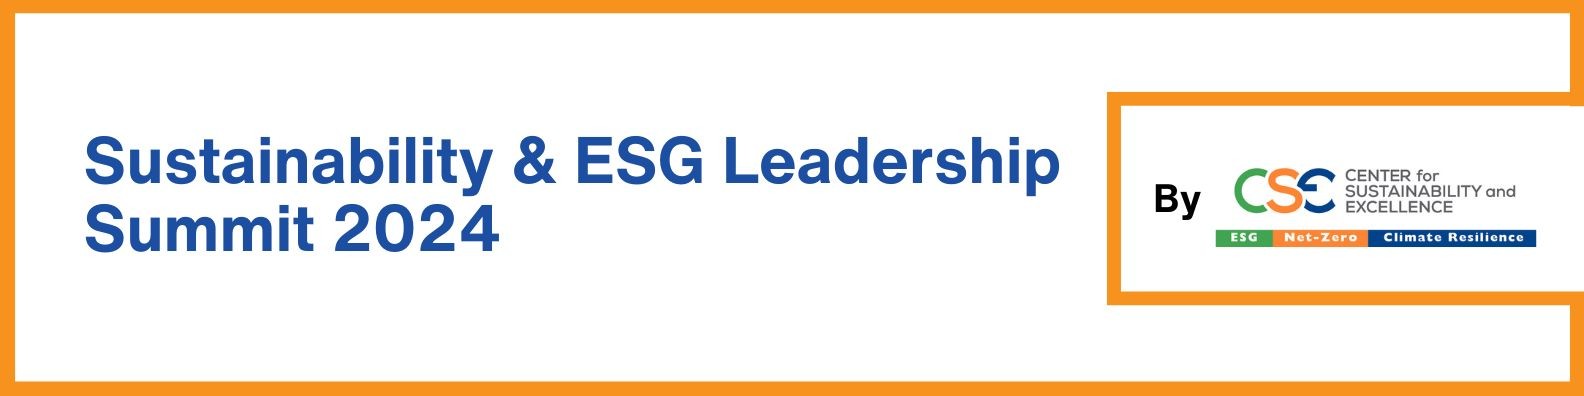 Sustainability & ESG Leadership Summit 2024